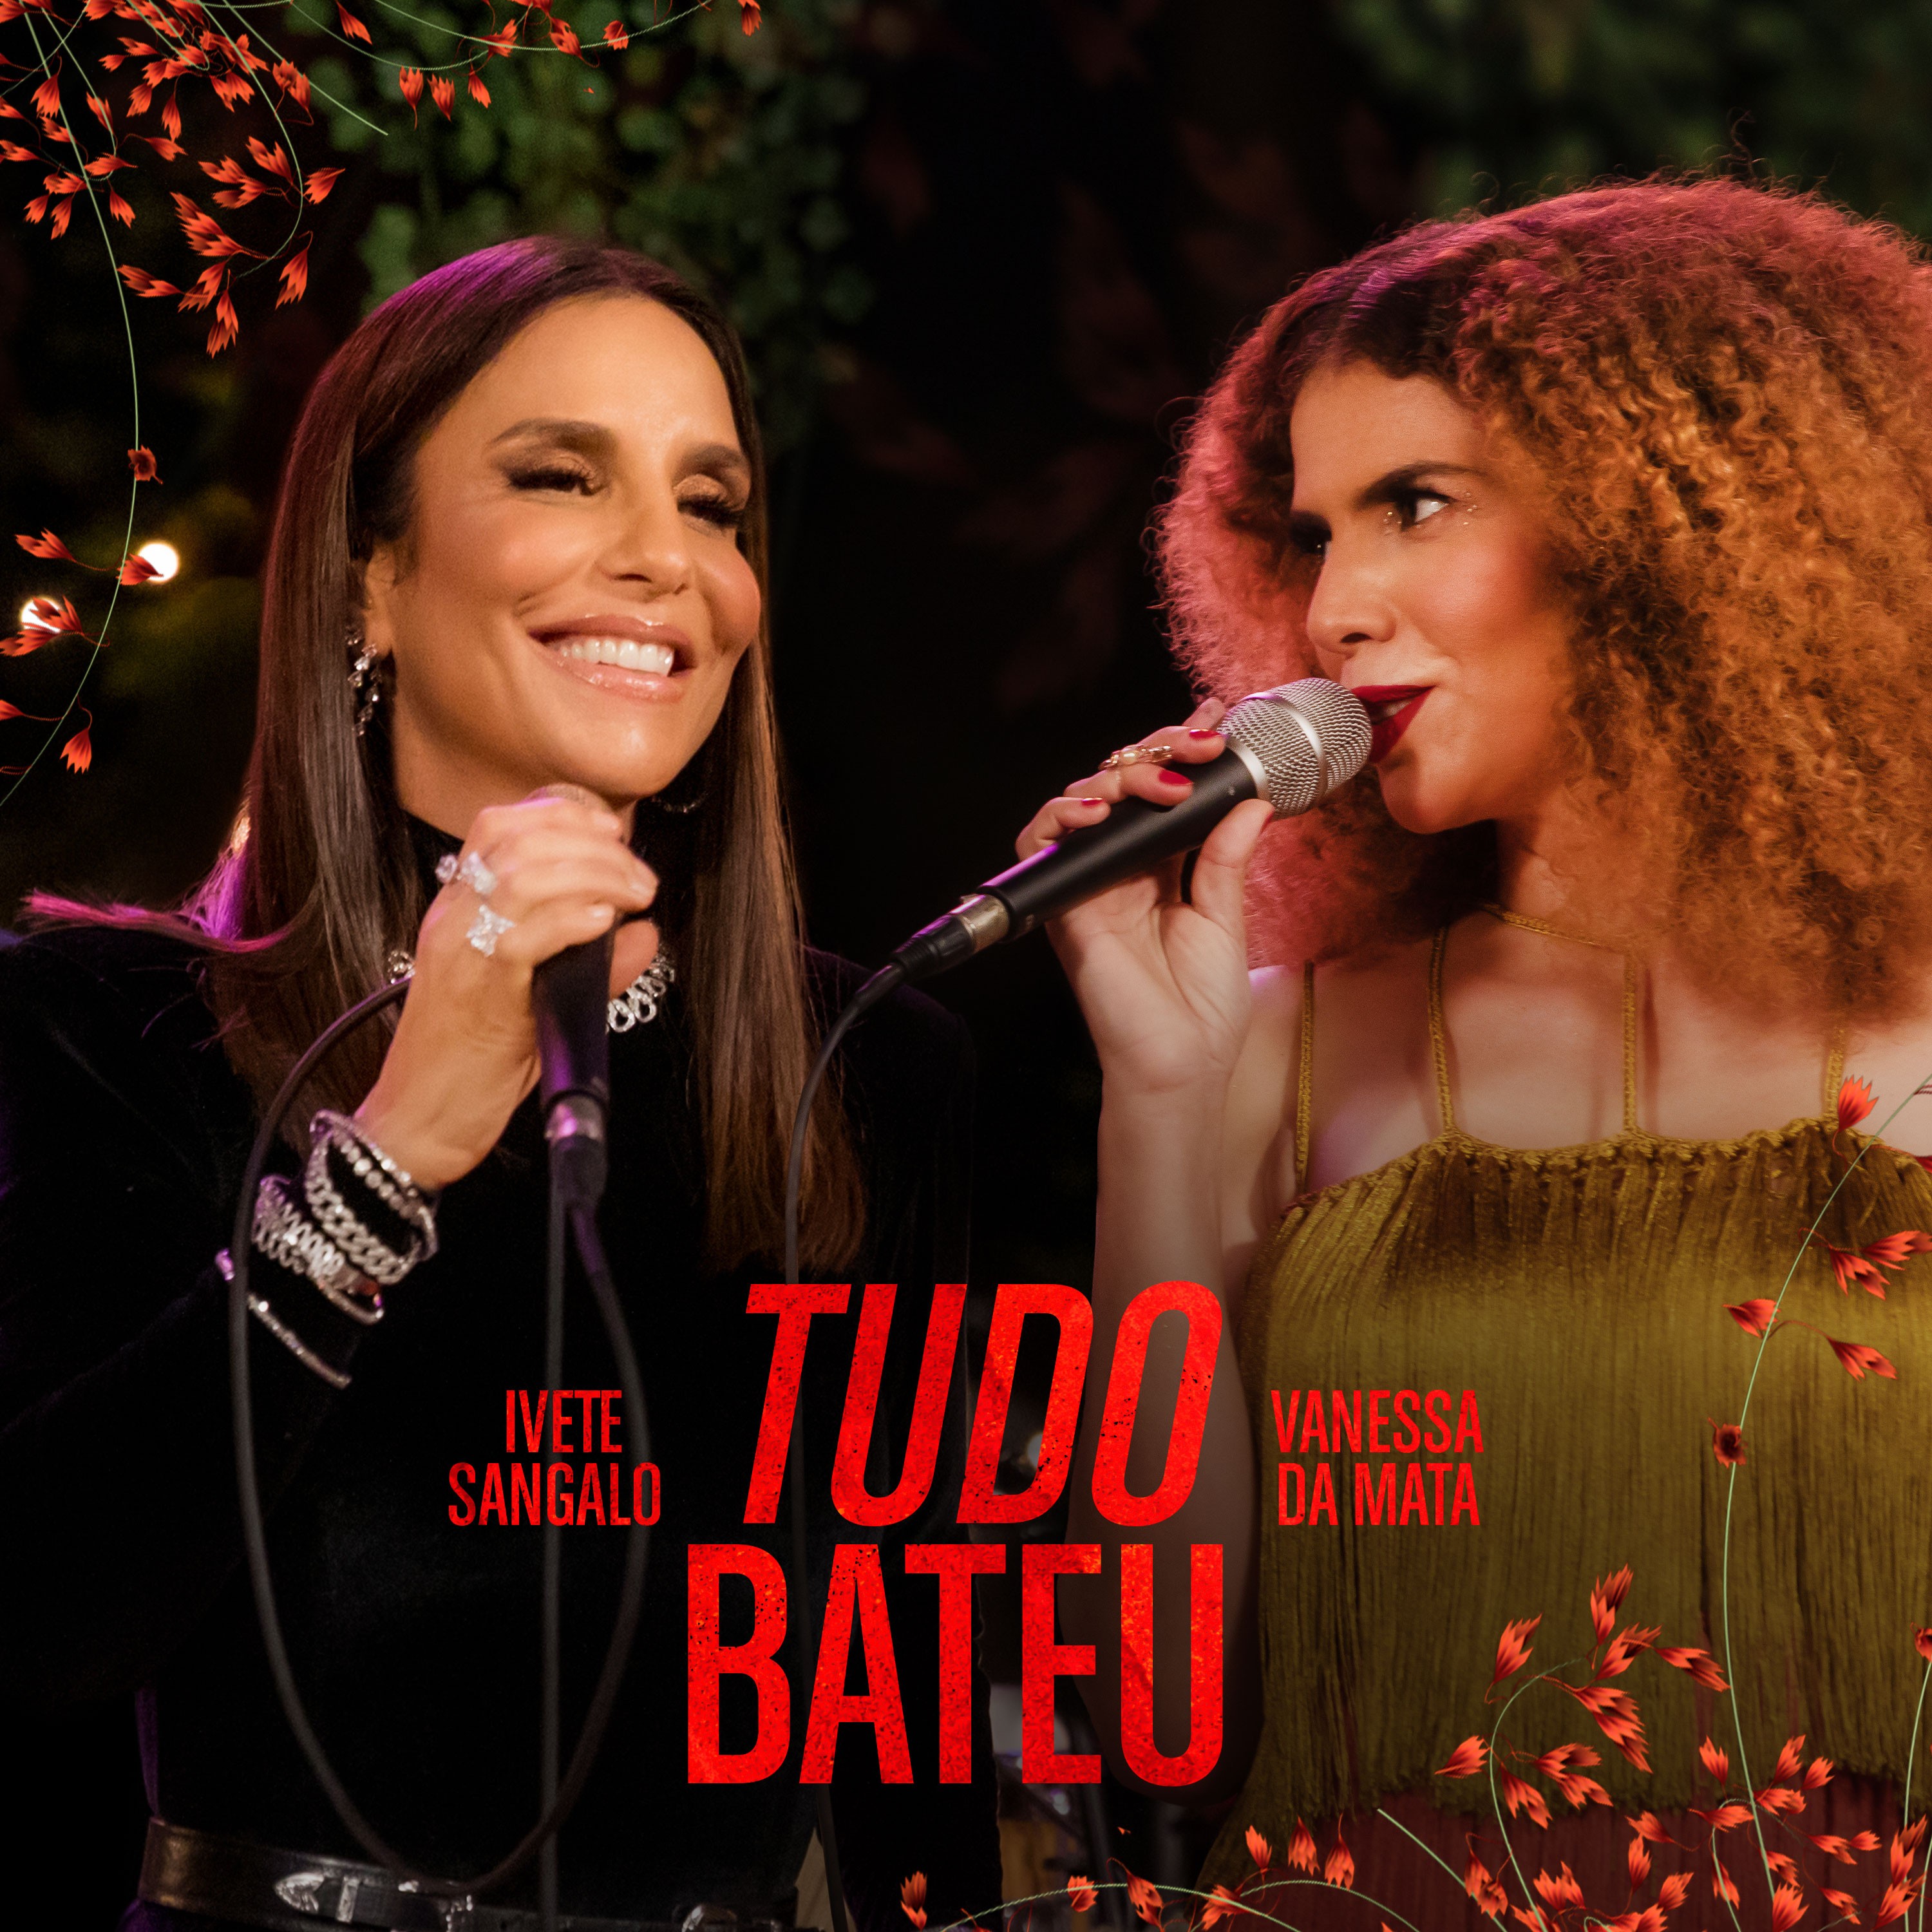 Ivete Sangalo entra na onda de Vanessa da Mata com single 'Tudo bateu' e abre parceria com a artista